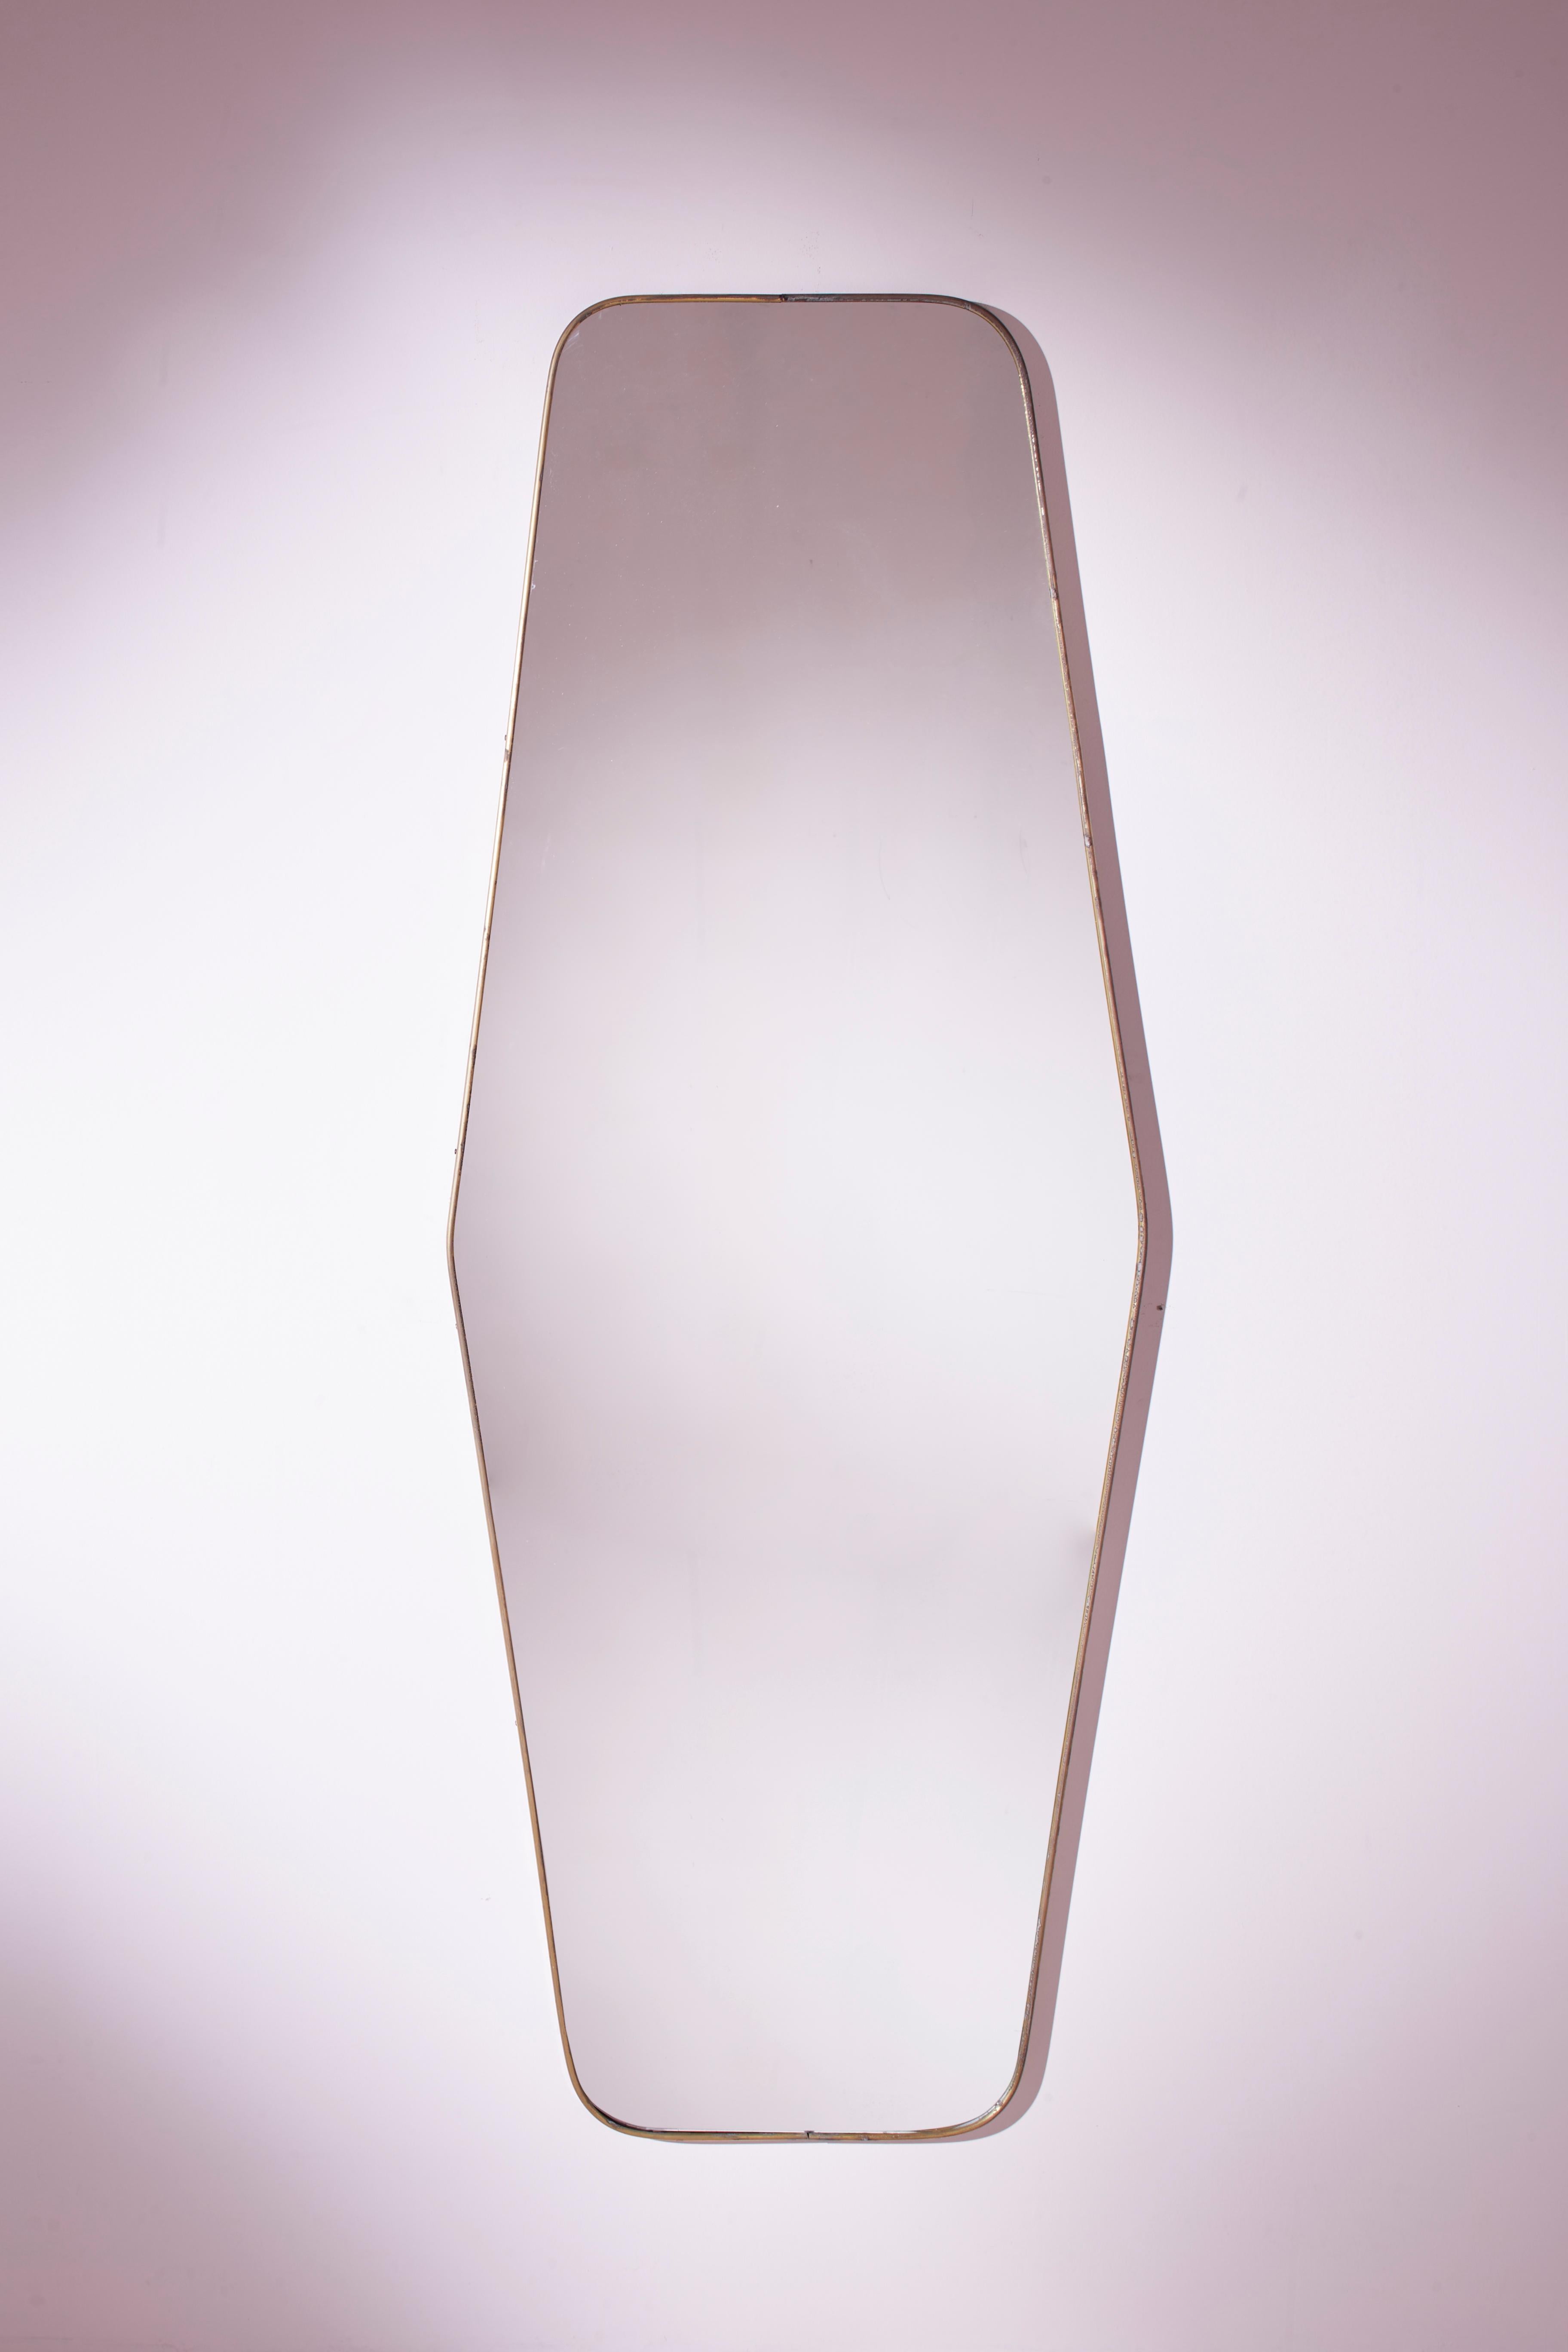 Ein beeindruckender italienischer Messing-Wandspiegel aus den 1950er Jahren mit einer eleganten, länglichen sechseckigen Form.

Dieser bemerkenswerte Ganzkörperspiegel besteht aus einer Originalplatte aus den 1950er Jahren, die durch einen leichten